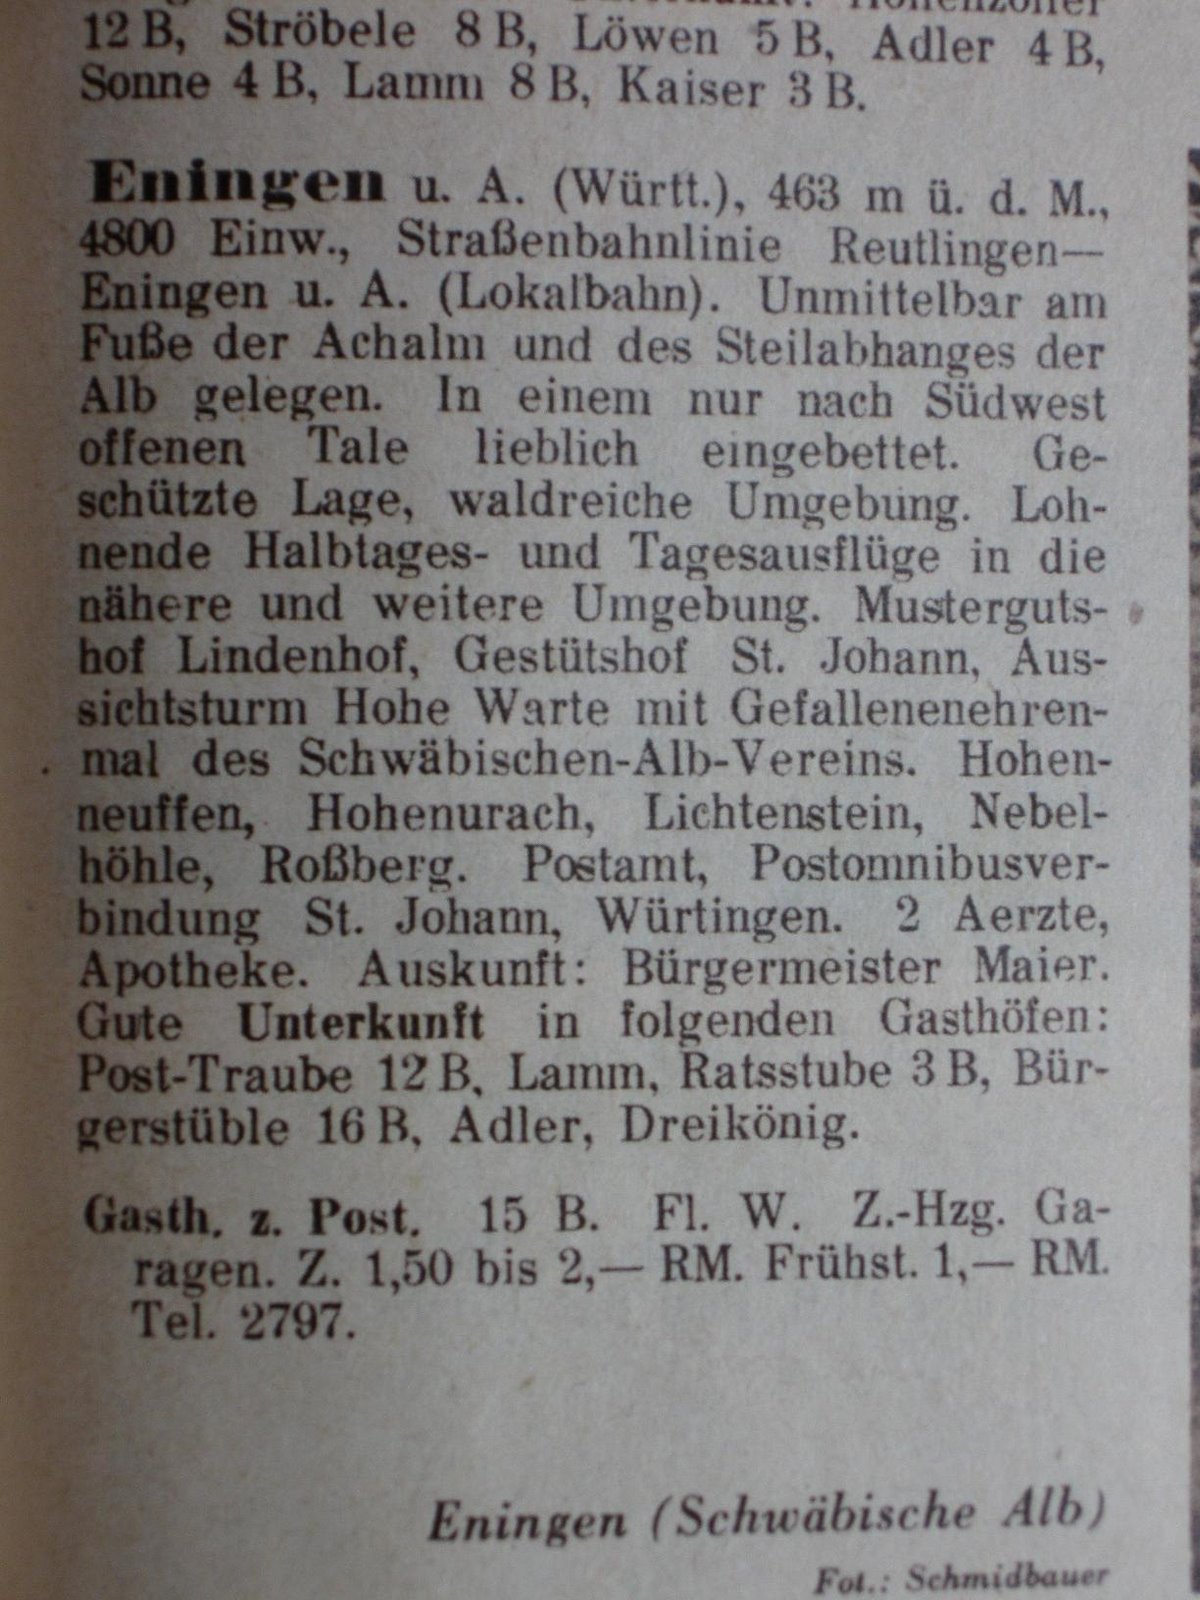 [187_Eningen+unter+Achalm_Text_Reichsreise-Buch_blog_.jpg]